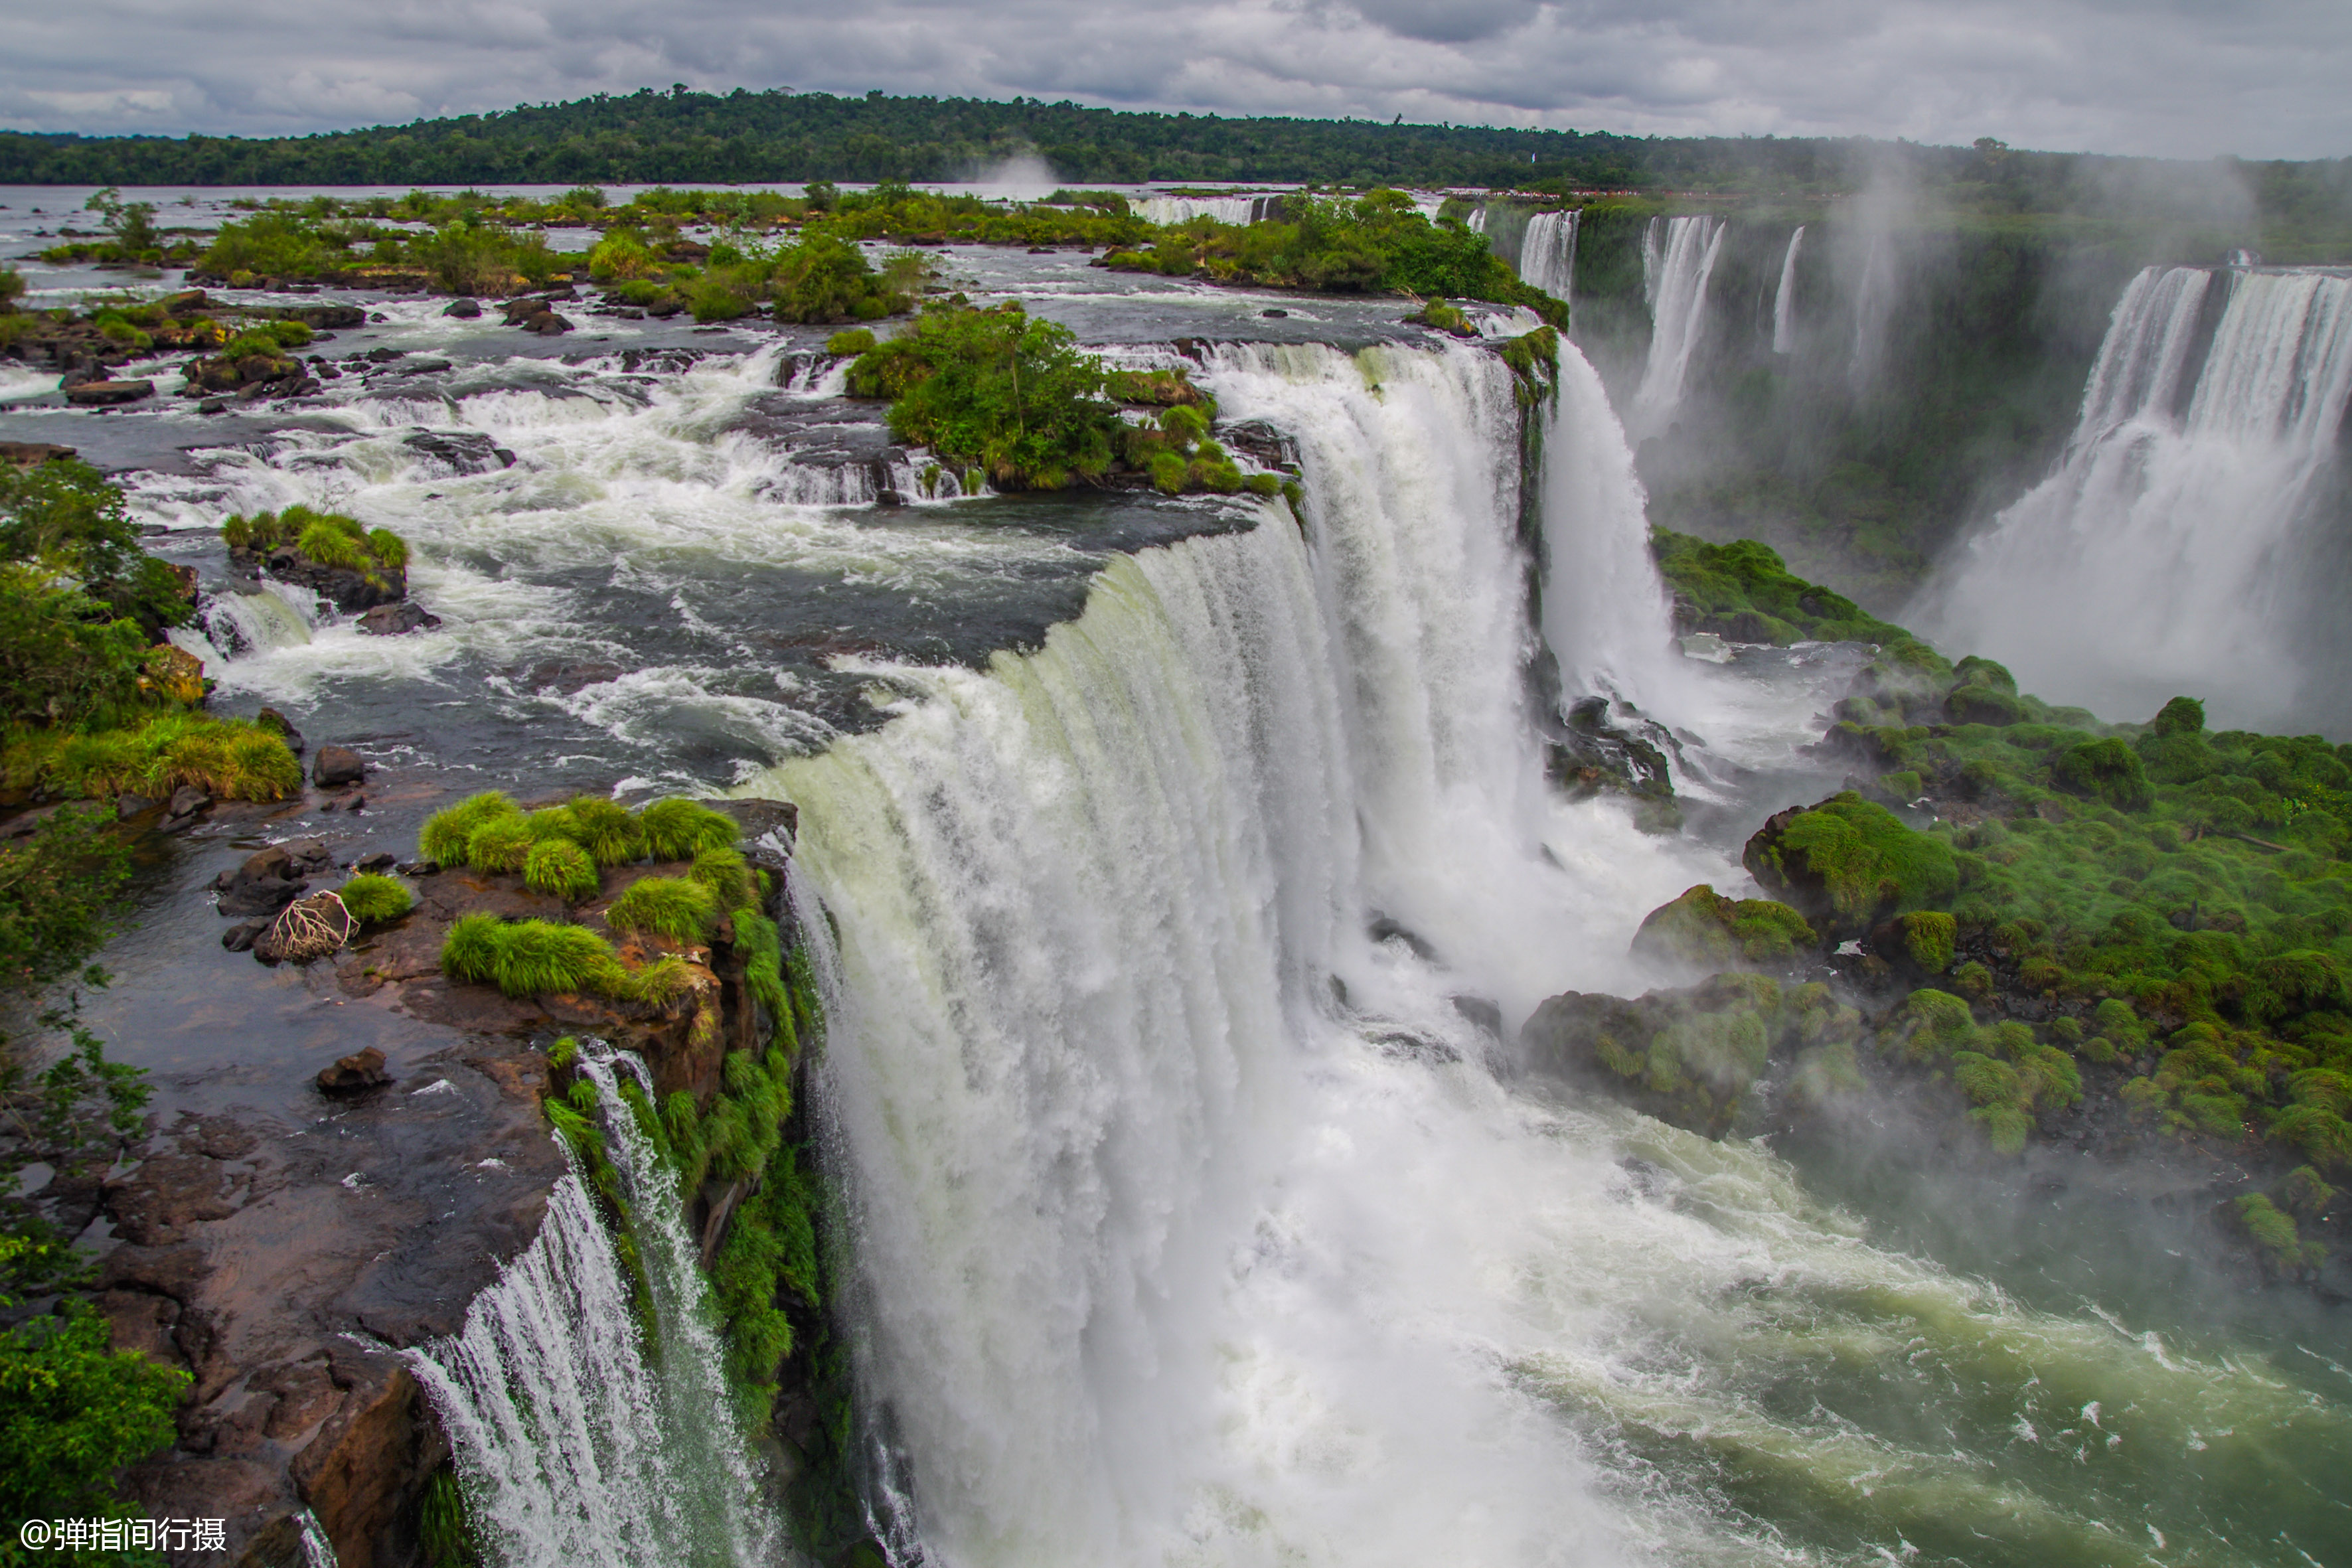 原创全球最宽的瀑布,宽4000米由270个瀑布群组成,横跨阿根廷和巴西